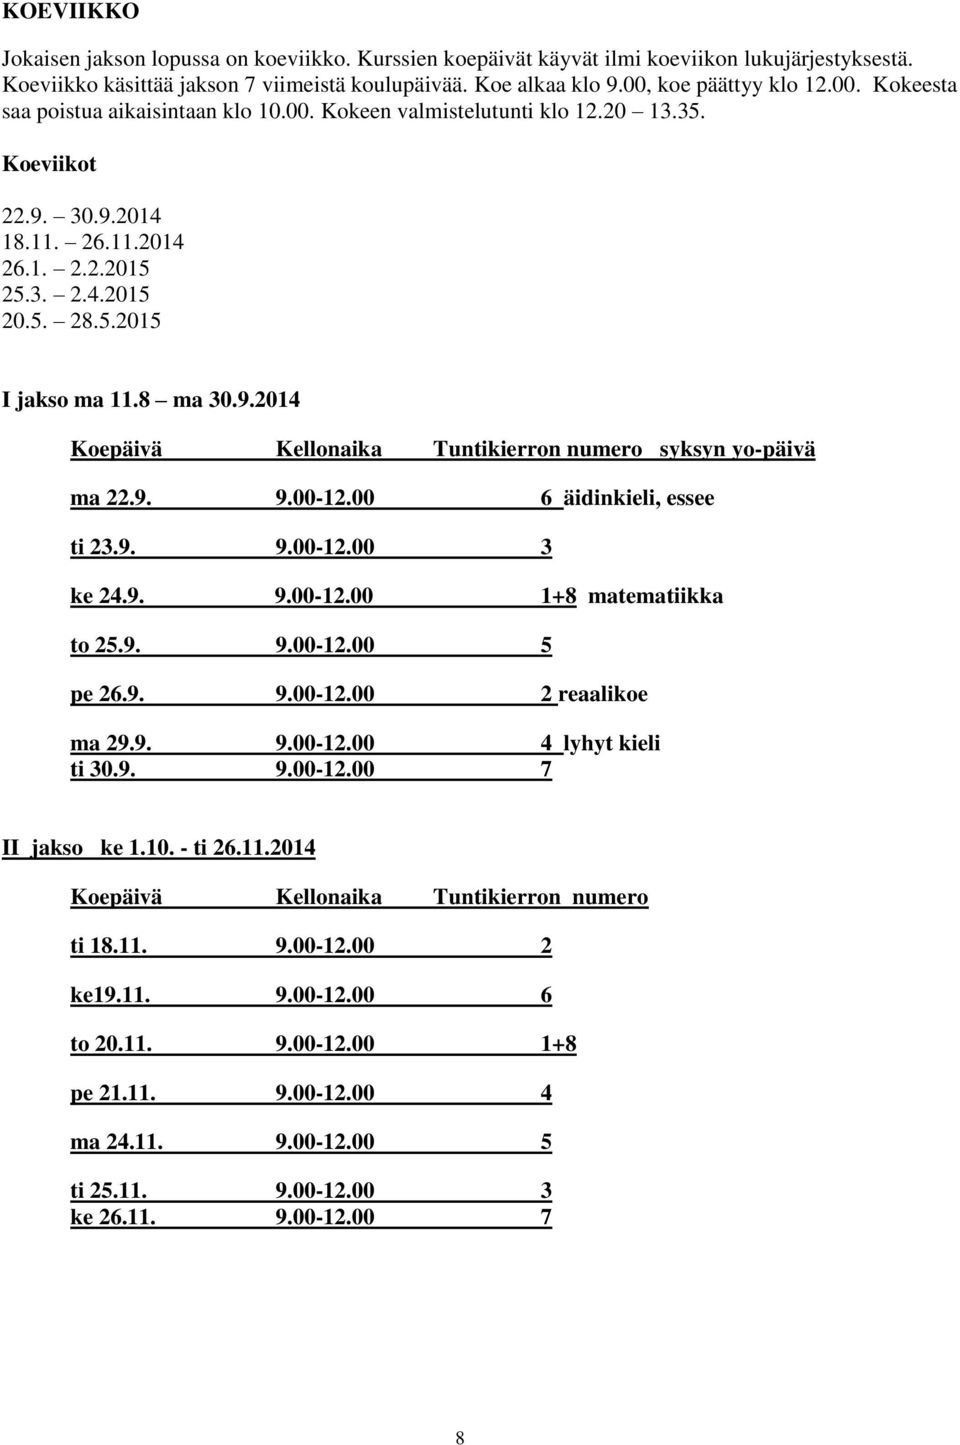 8 ma 30.9.2014 Koepäivä Kellonaika Tuntikierron numero syksyn yo-päivä ma 22.9. 9.00-12.00 6 äidinkieli, essee ti 23.9. 9.00-12.00 3 ke 24.9. 9.00-12.00 1+8 matematiikka to 25.9. 9.00-12.00 5 pe 26.9. 9.00-12.00 2 reaalikoe ma 29.